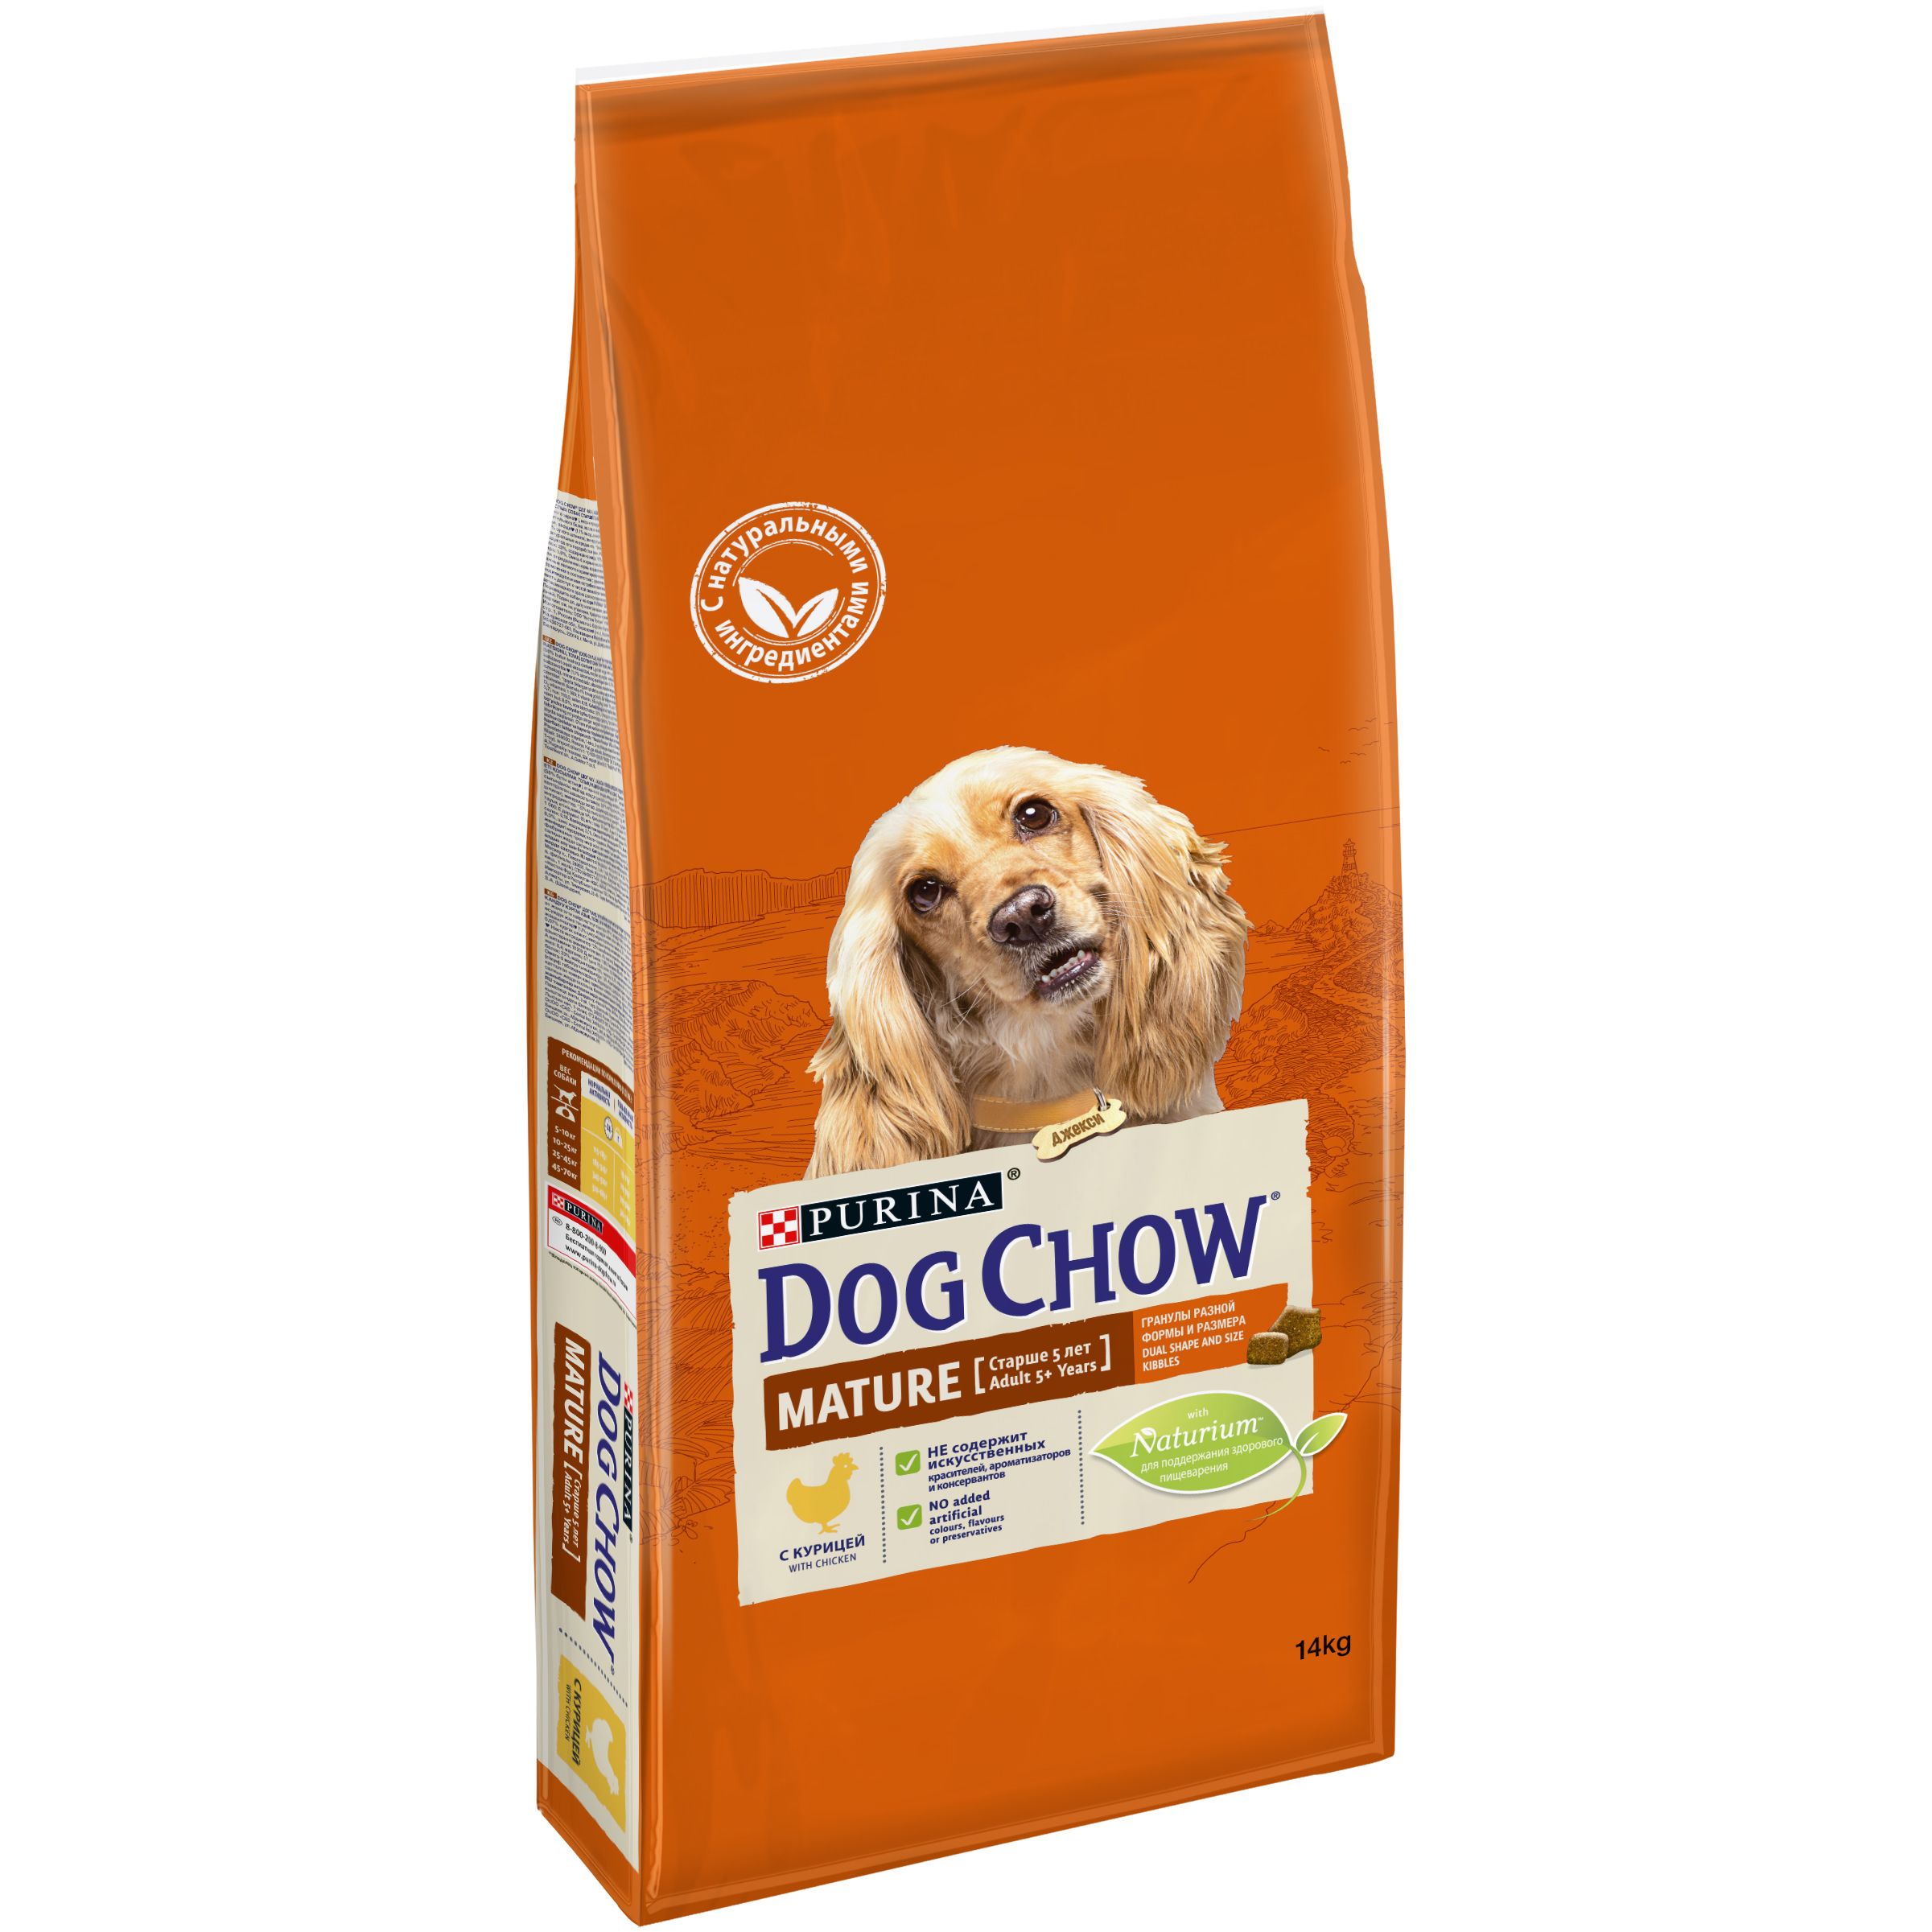 Корм для собаки buddy. Корм Dog Chow для взрослых собак старшего возраста, с курицей. Дог чау корм для собак 14 кг. Корм для собак Dog Chow 14 кг. Корм для собак дог чау с ягненком 14 кг.